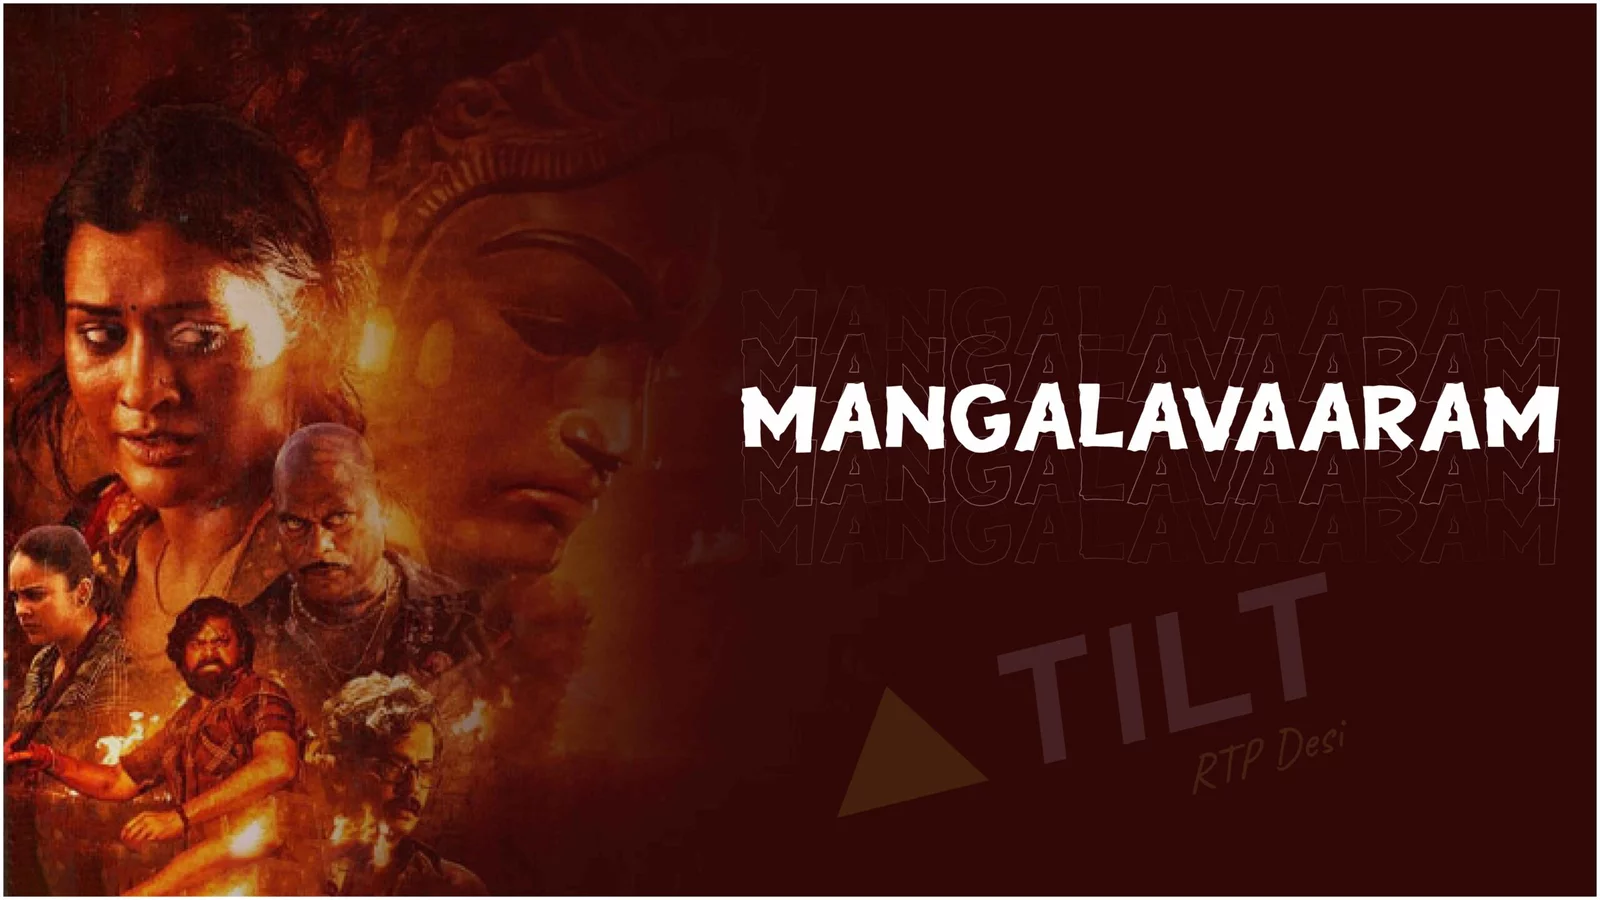 Mangalavaram movie -Triangle tilt